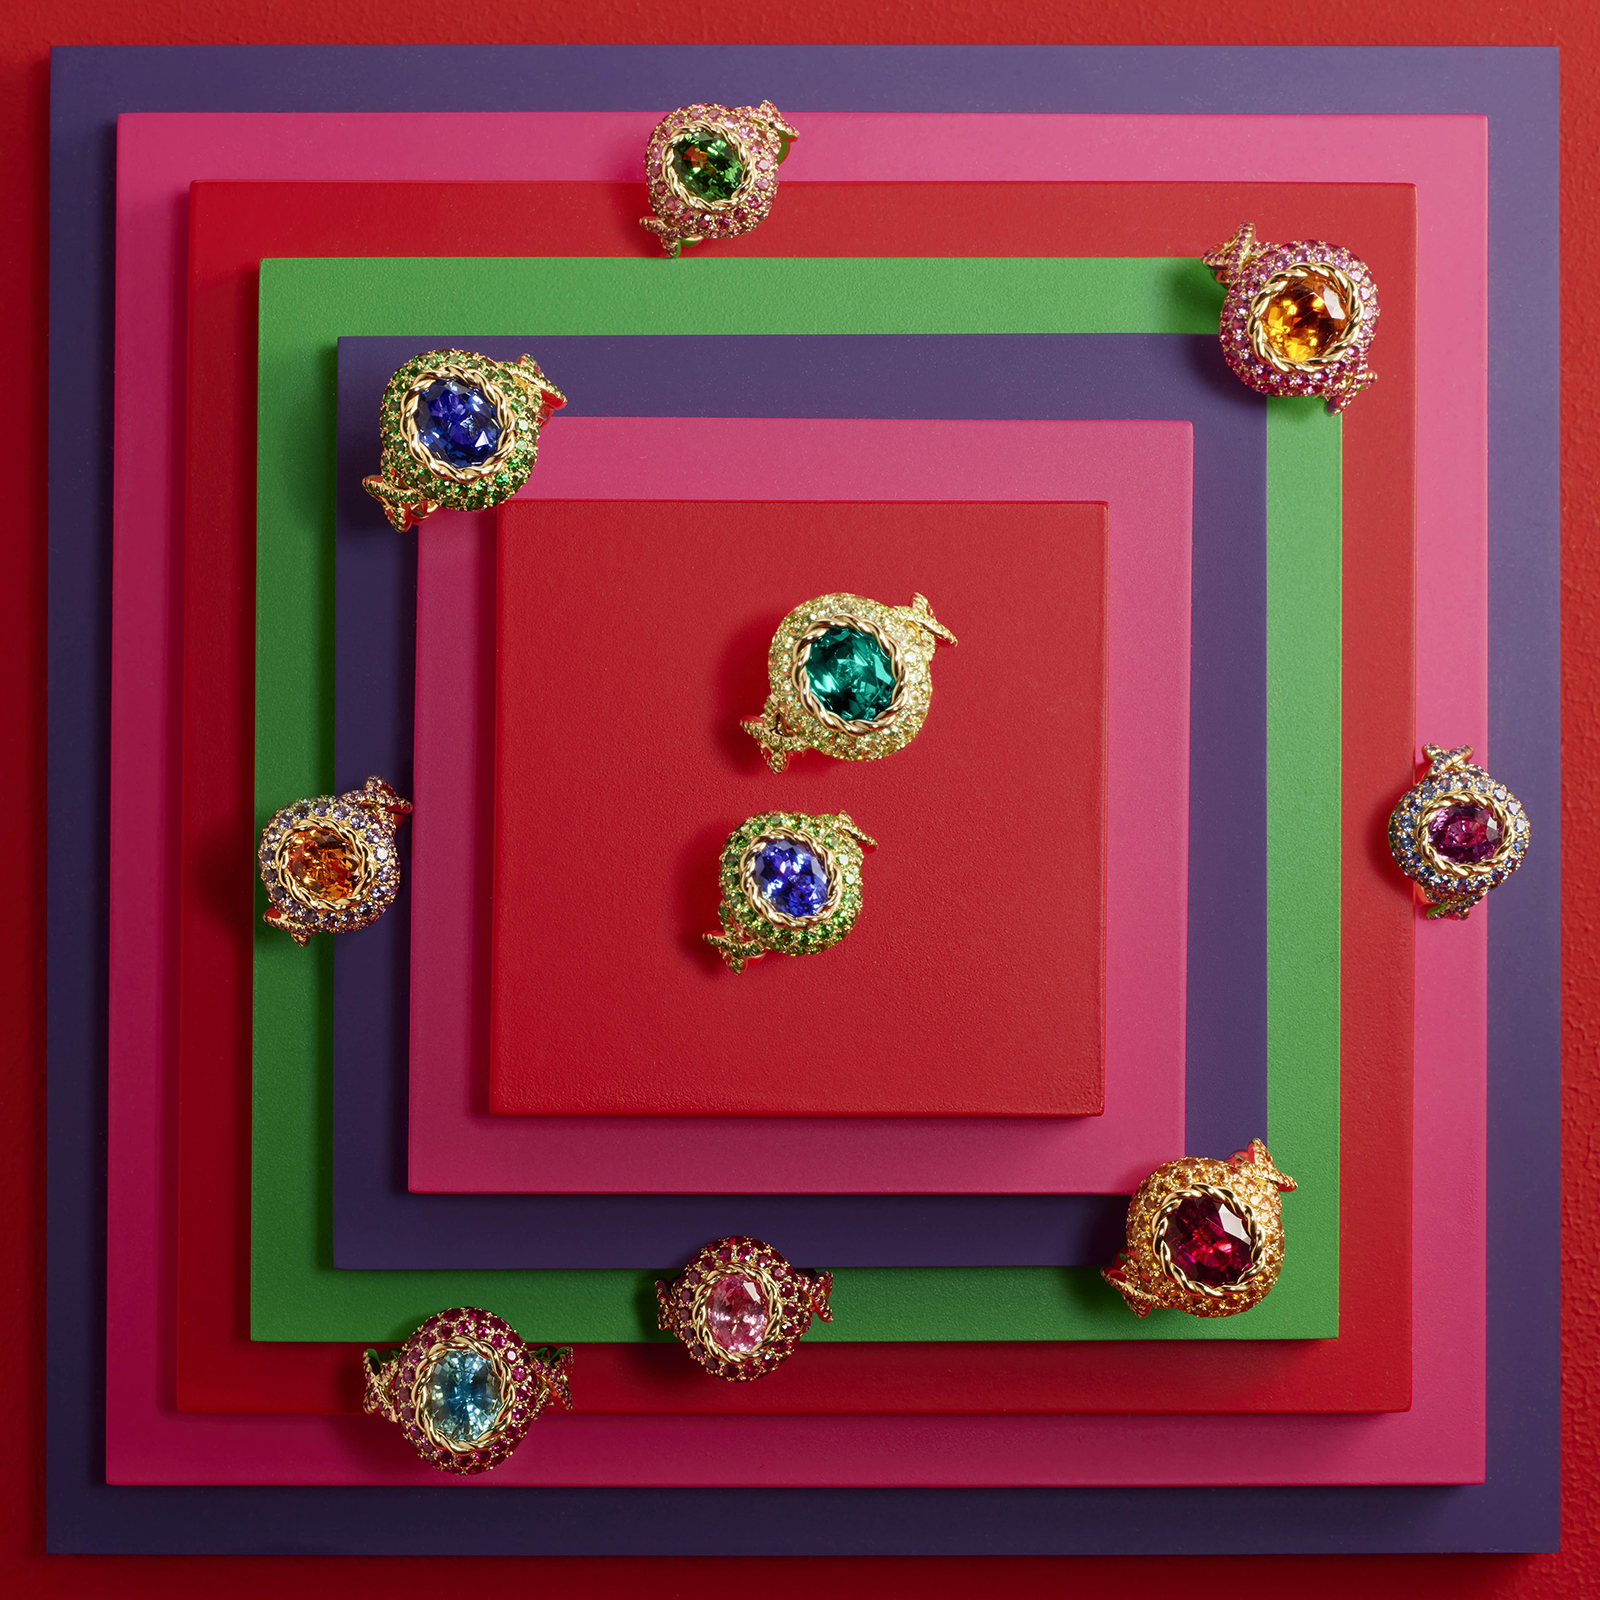 Из драгоценных камней 20 разных цветов Лор-Изабель Меллерио создала 10 цветовых вариаций